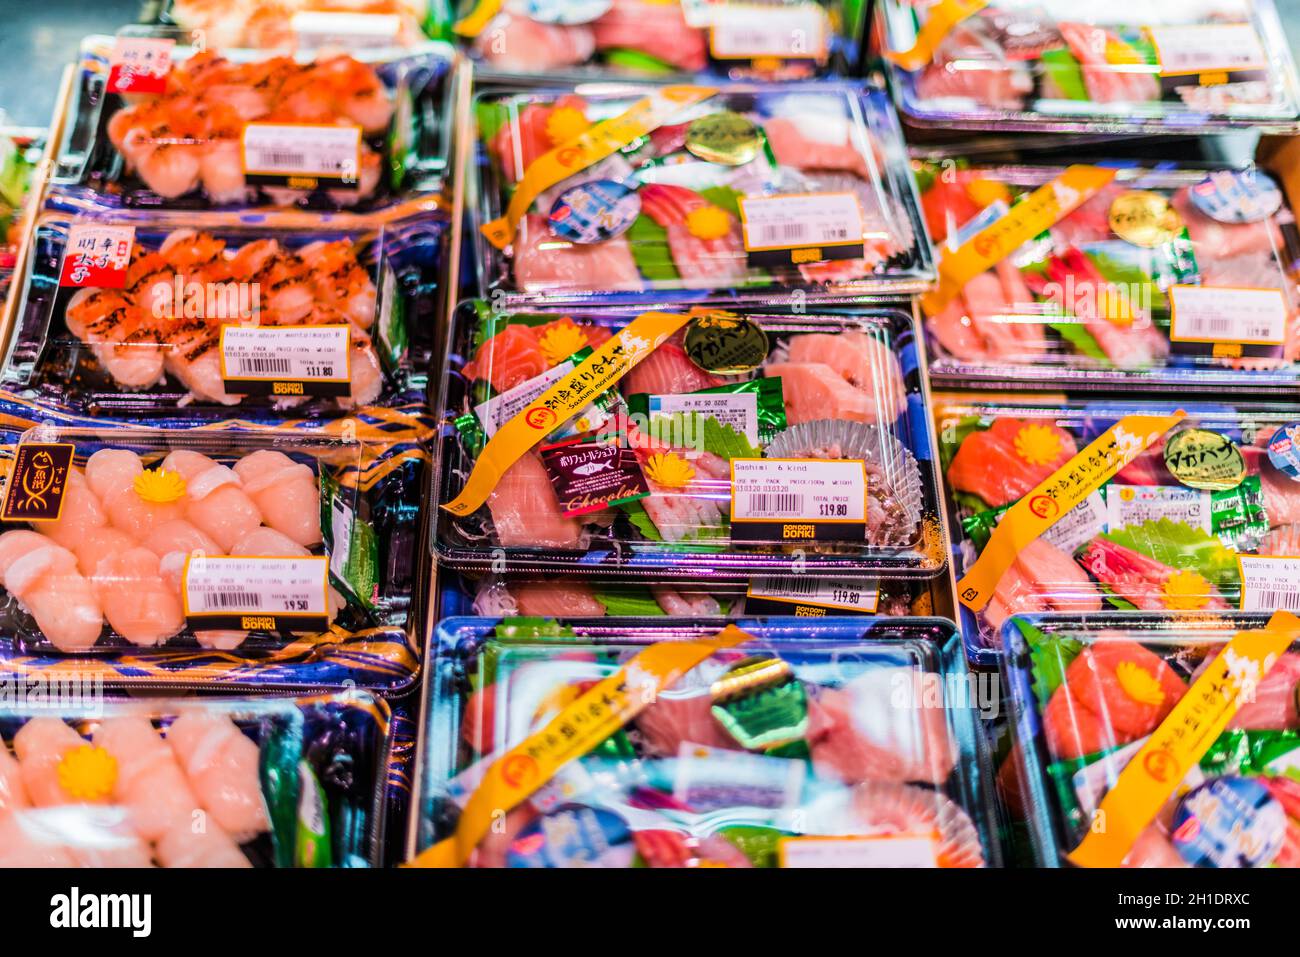 SINGAPUR - MAR 3, 2020: Fertigverpackte, verzehrfertige Meeresfrüchte, die in einem handelsüblichen Kühlschrank zum Verkauf stehen Stockfoto